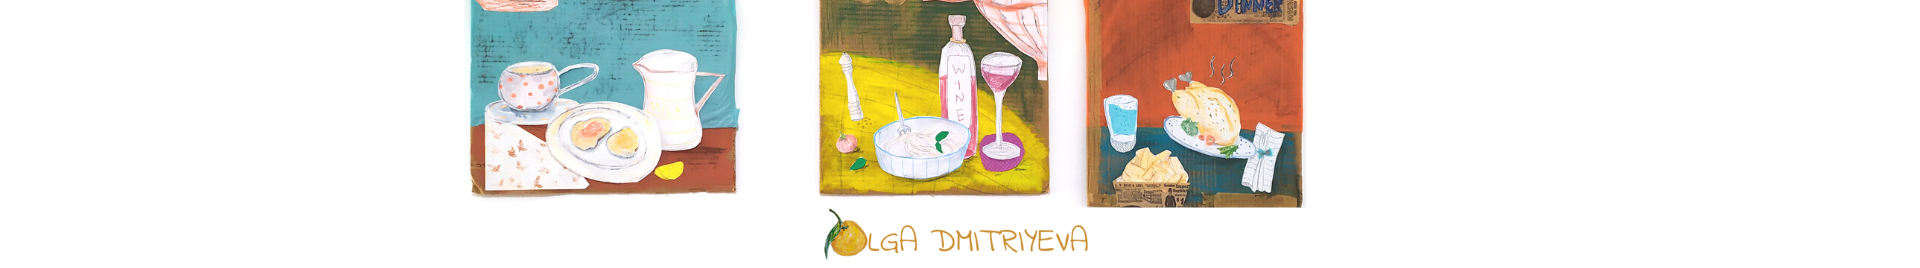 Olga Dmitriyeva's profile banner